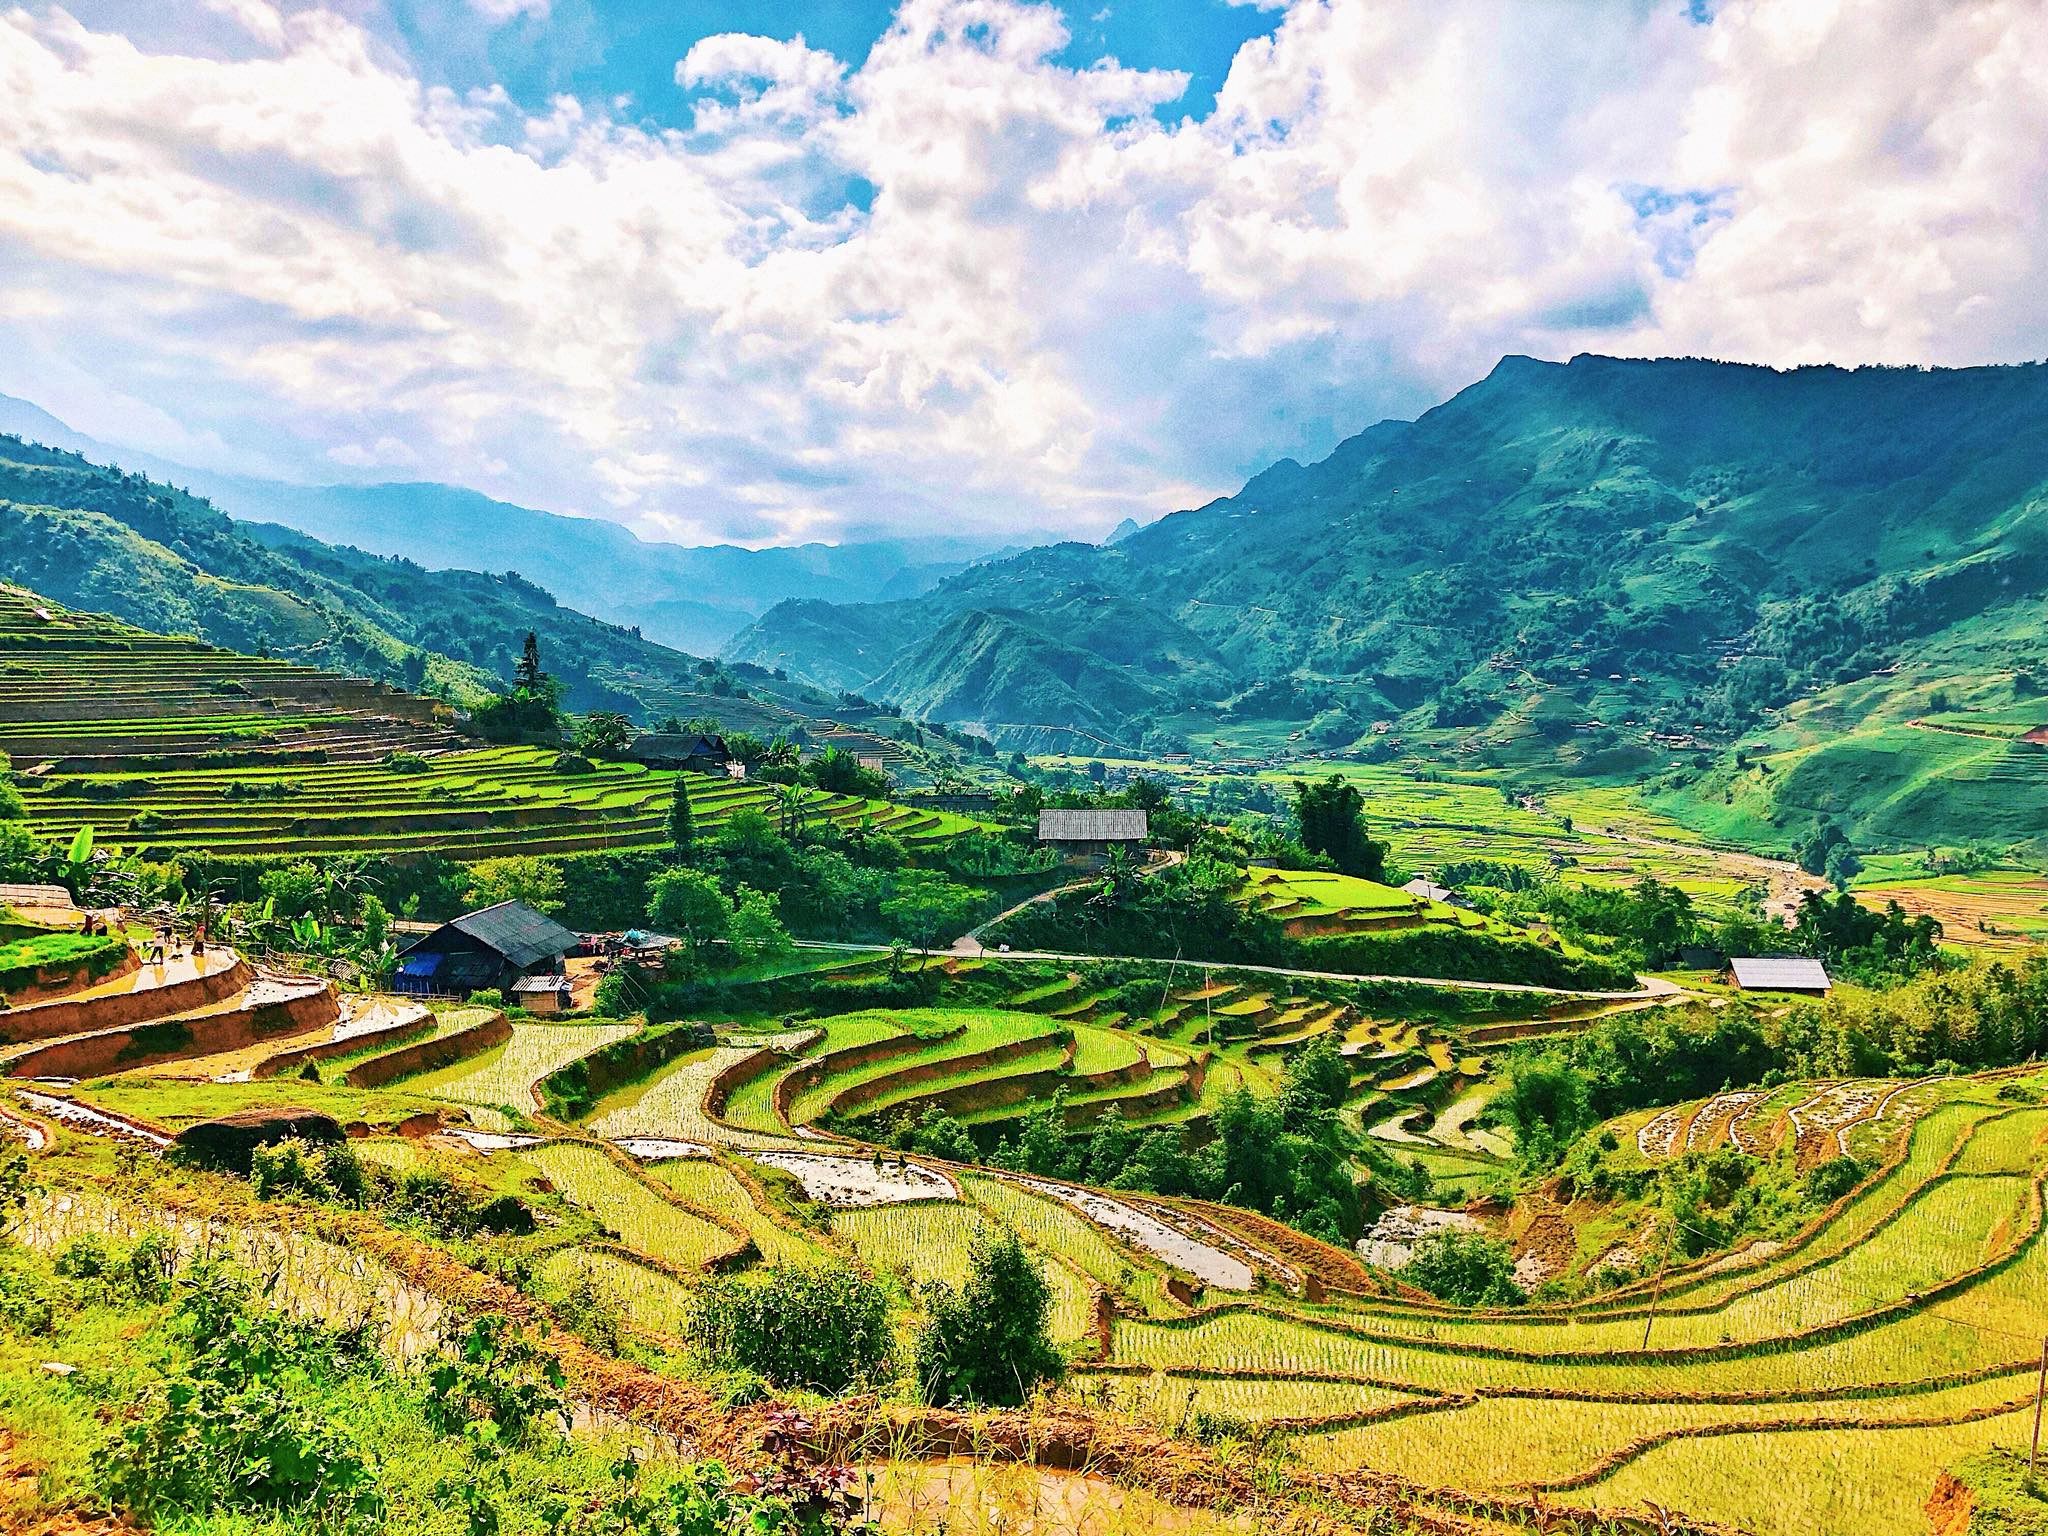 Sa Pa là một điểm đến du lịch nổi tiếng ở Việt Nam. Với khung cảnh đẹp mê hồn, núi rừng bạt ngàn, Sa Pa thu hút hàng nghìn du khách đến thăm mỗi năm. Hãy xem hình ảnh của Sa Pa để biết thêm về vùng đất này.